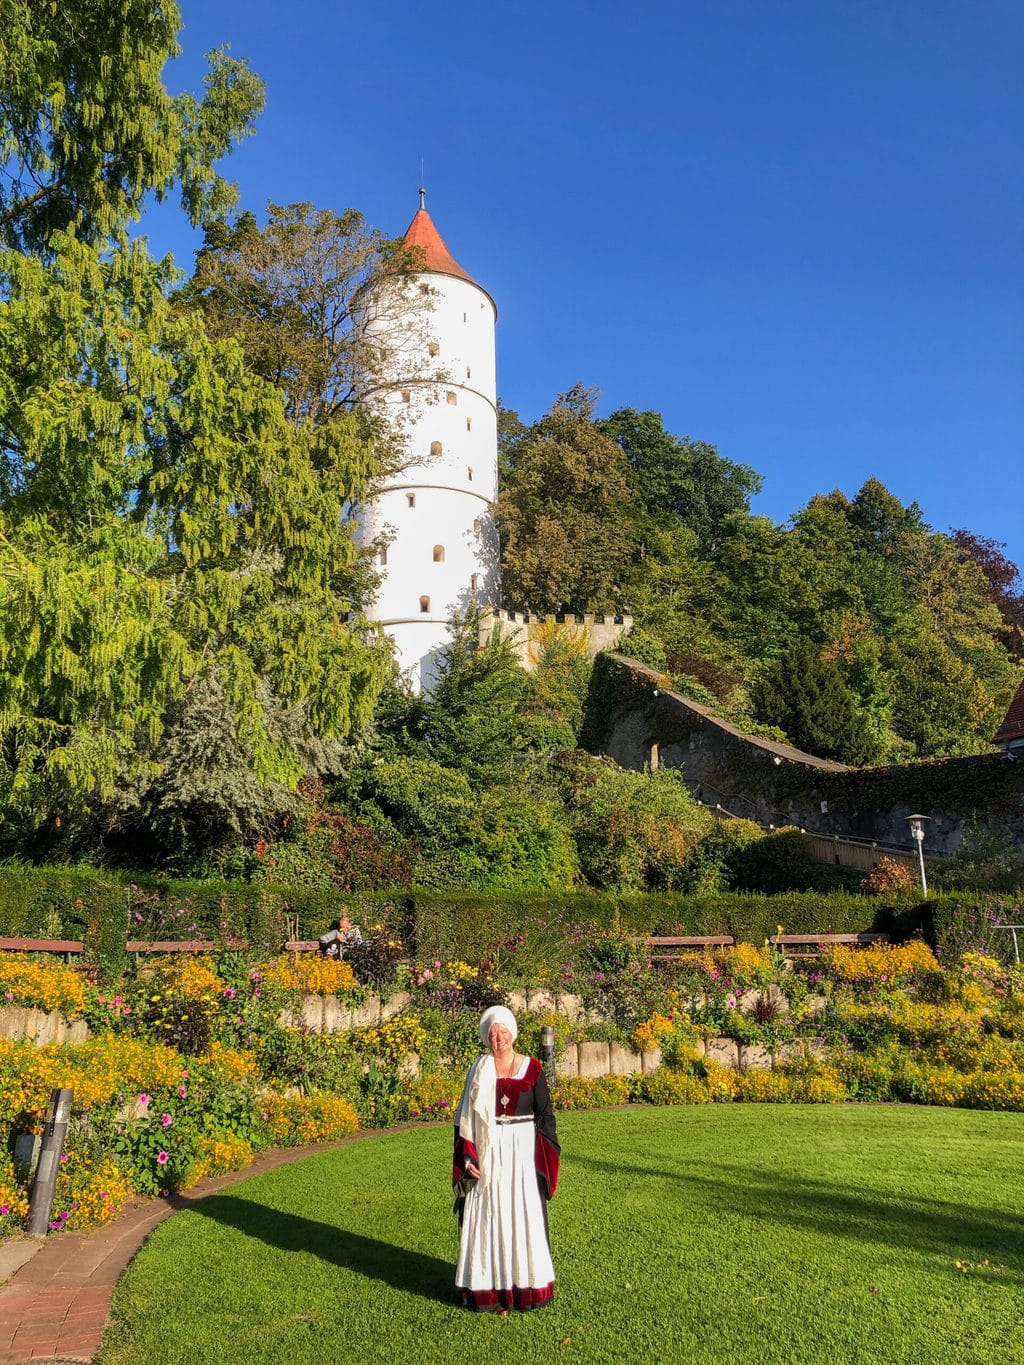 Een stadsgide staat voor de witte toren in Biberach in Baden-Württemberg